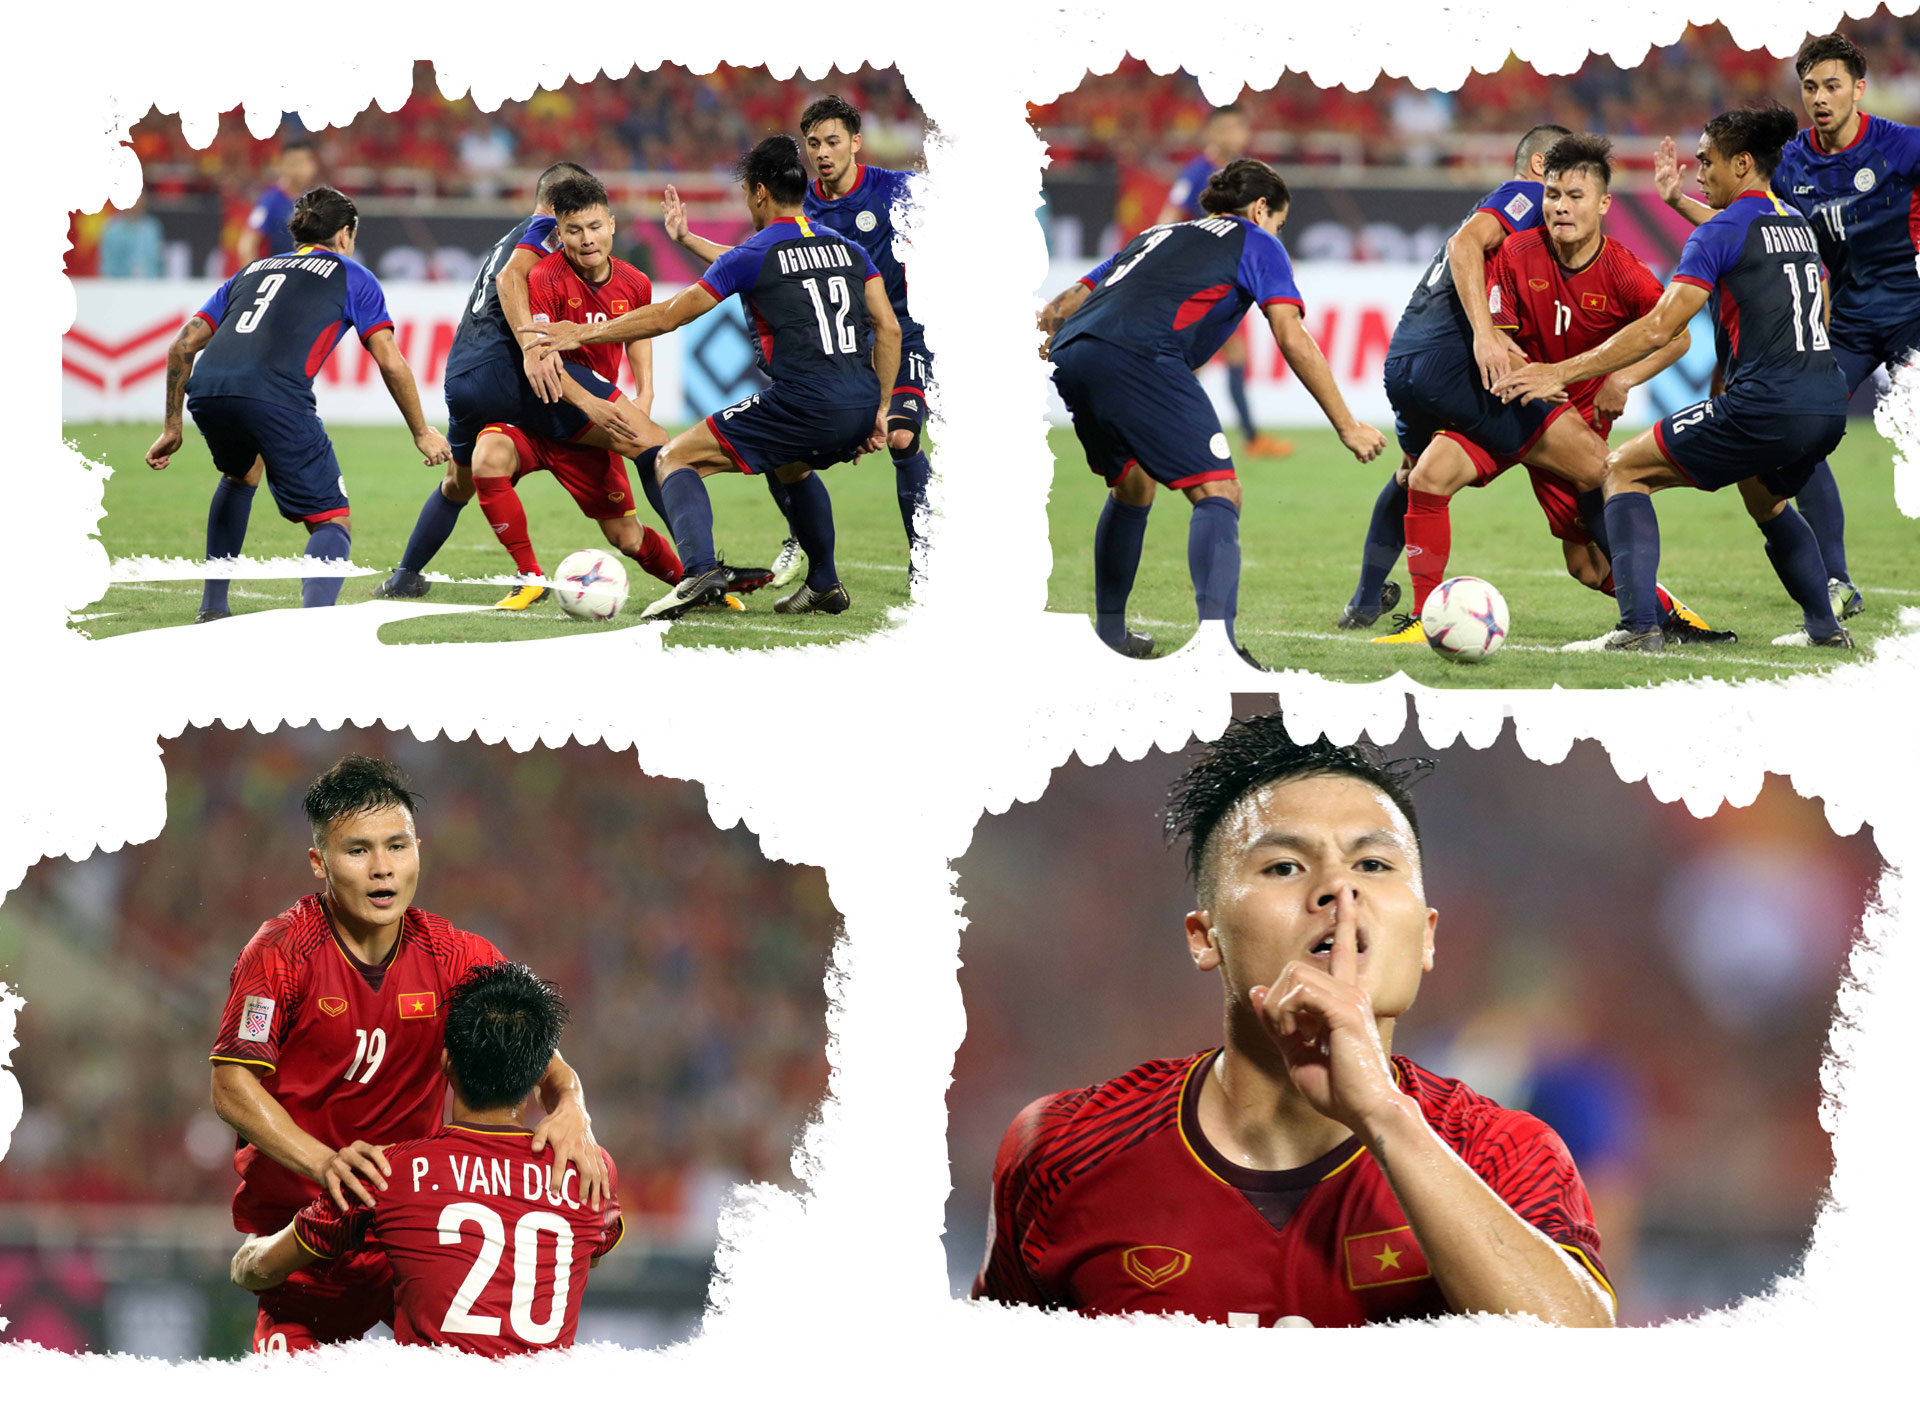 Quang Hải – Ngôi sao trẻ & 2 khoảnh khắc kỳ diệu bóng đá Việt Nam - 16